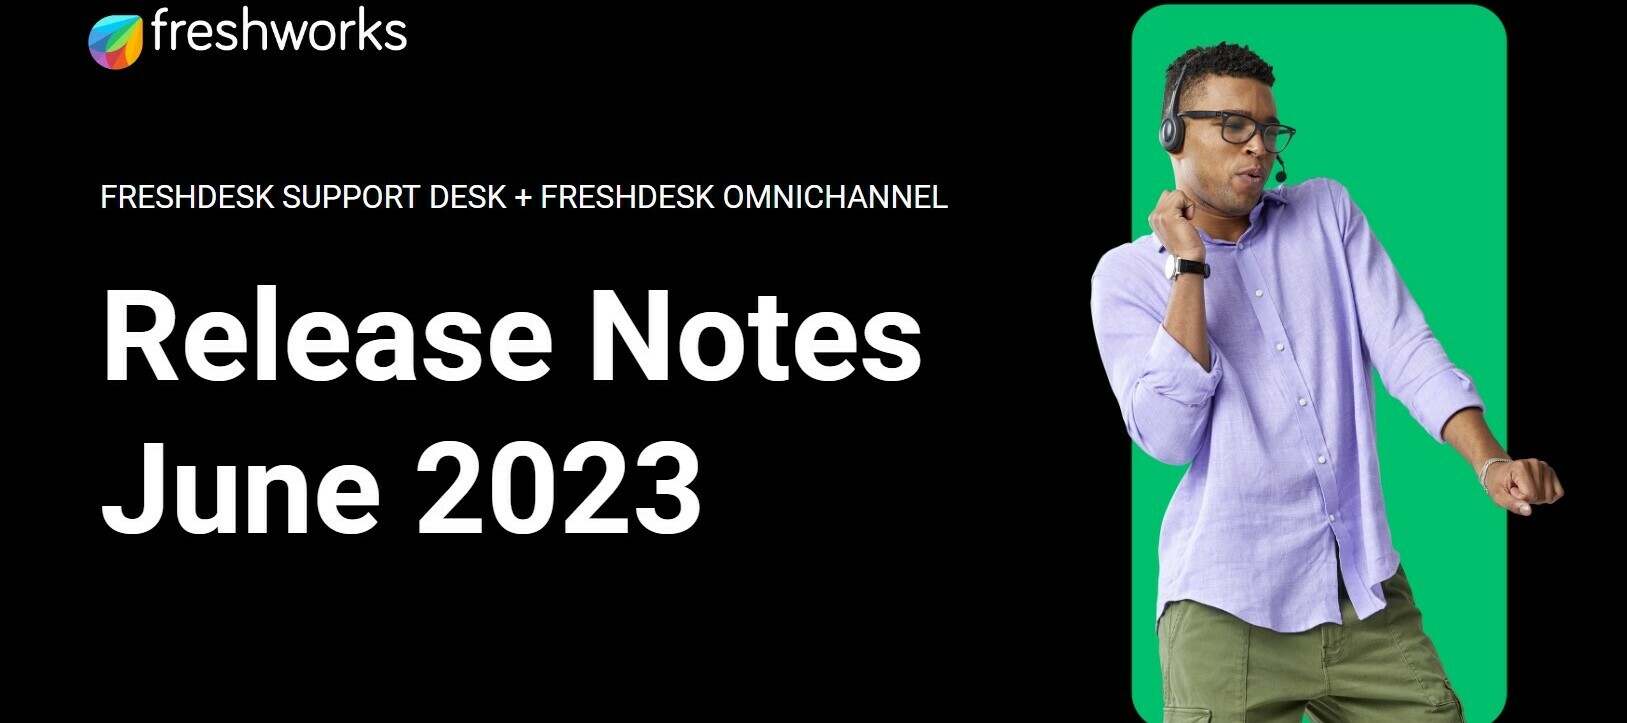 Freshdesk Release Notes - June 2023